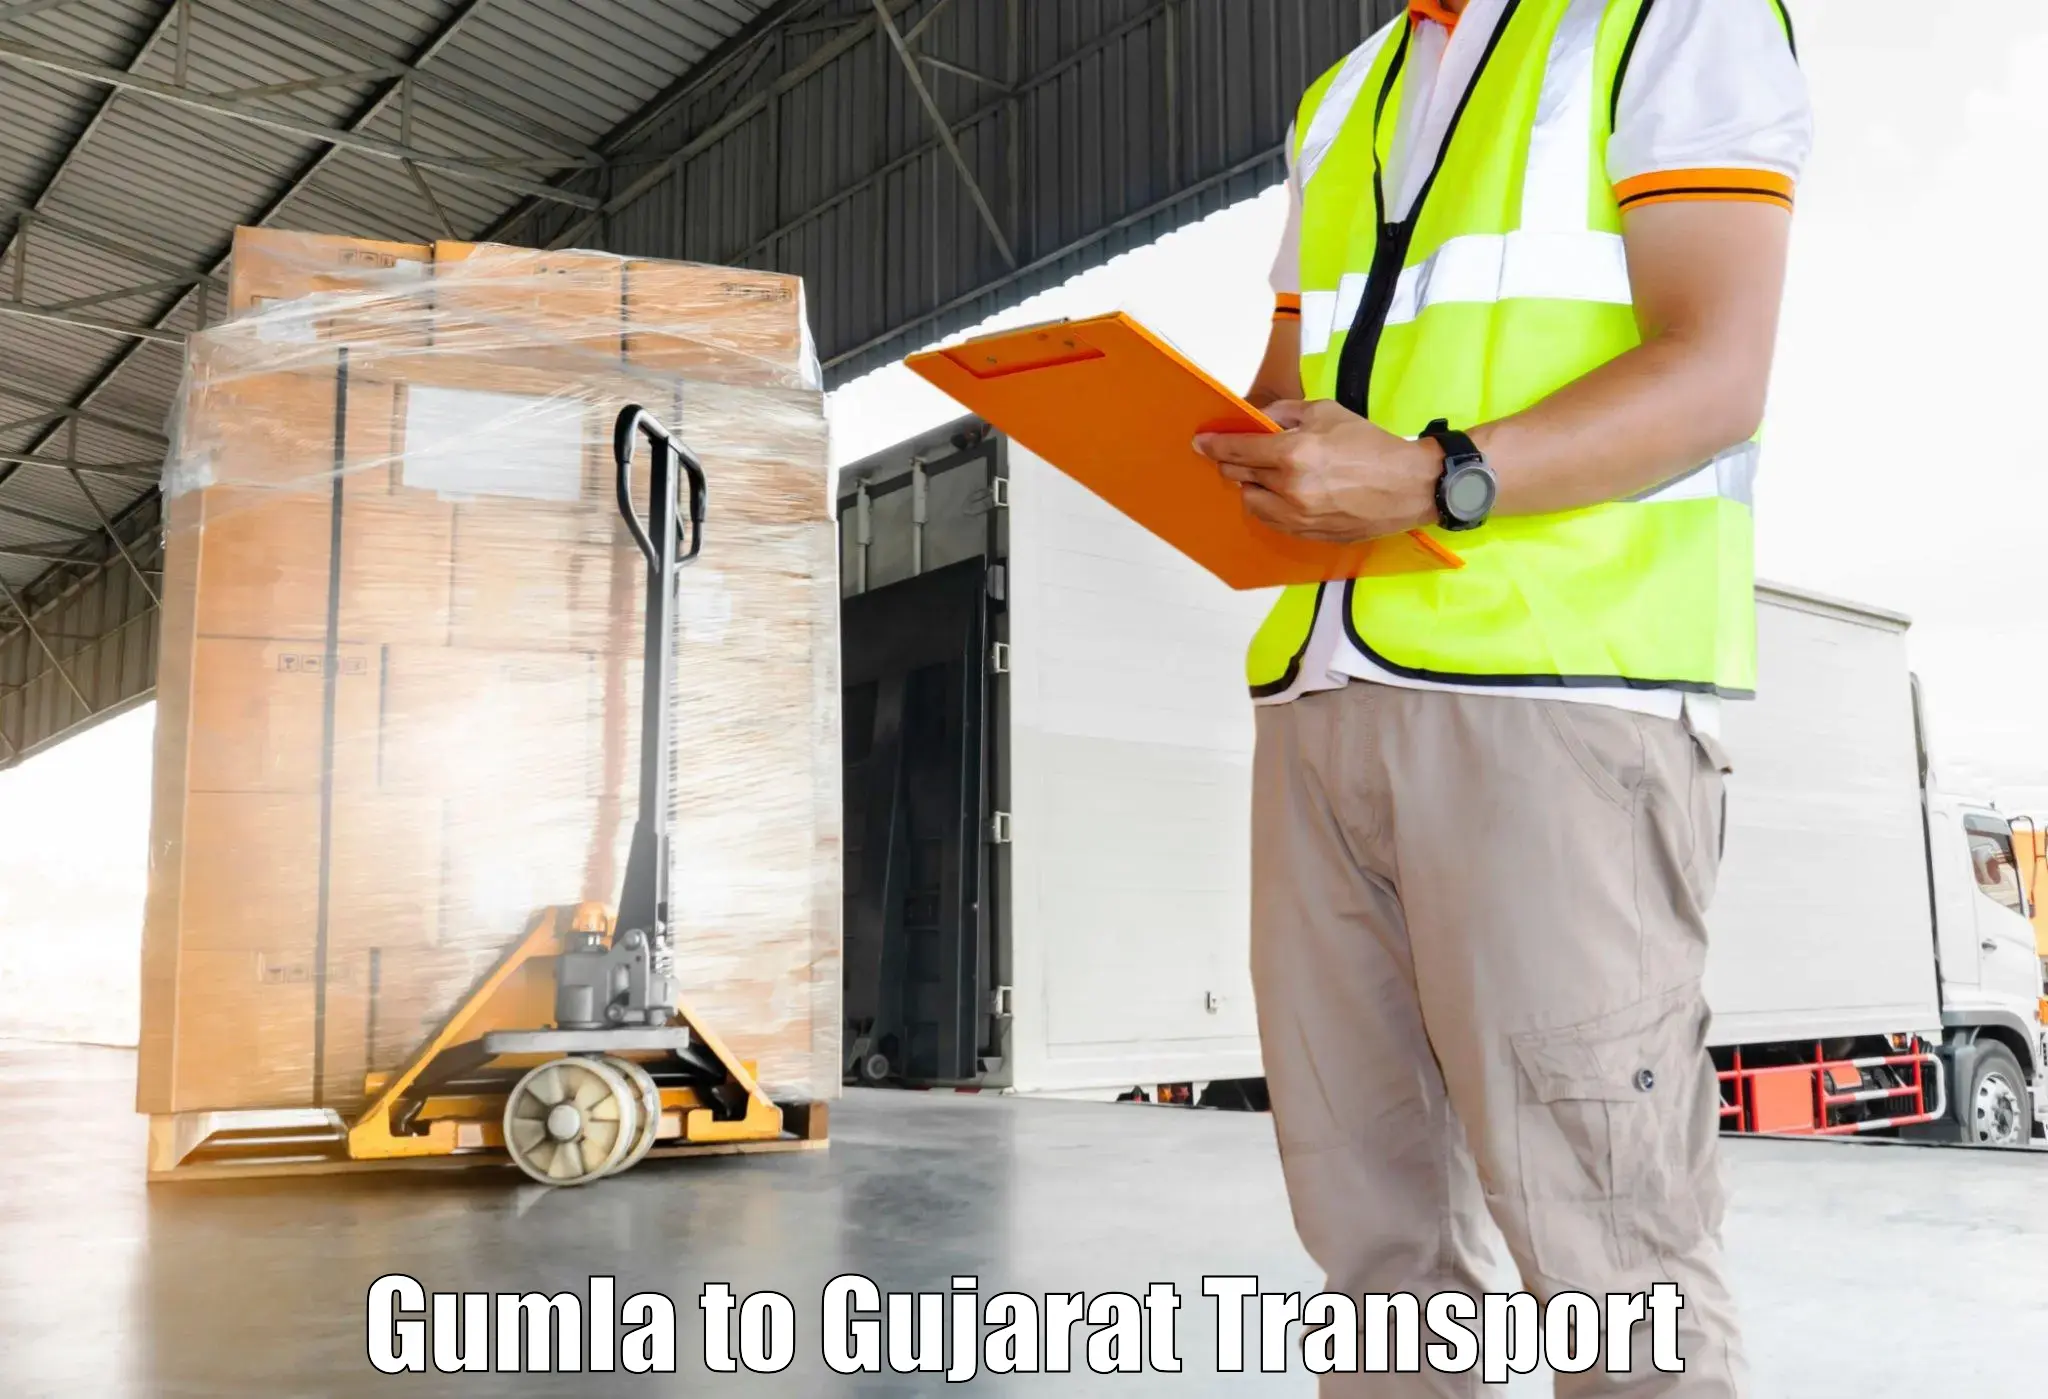 Online transport service Gumla to Dhanera